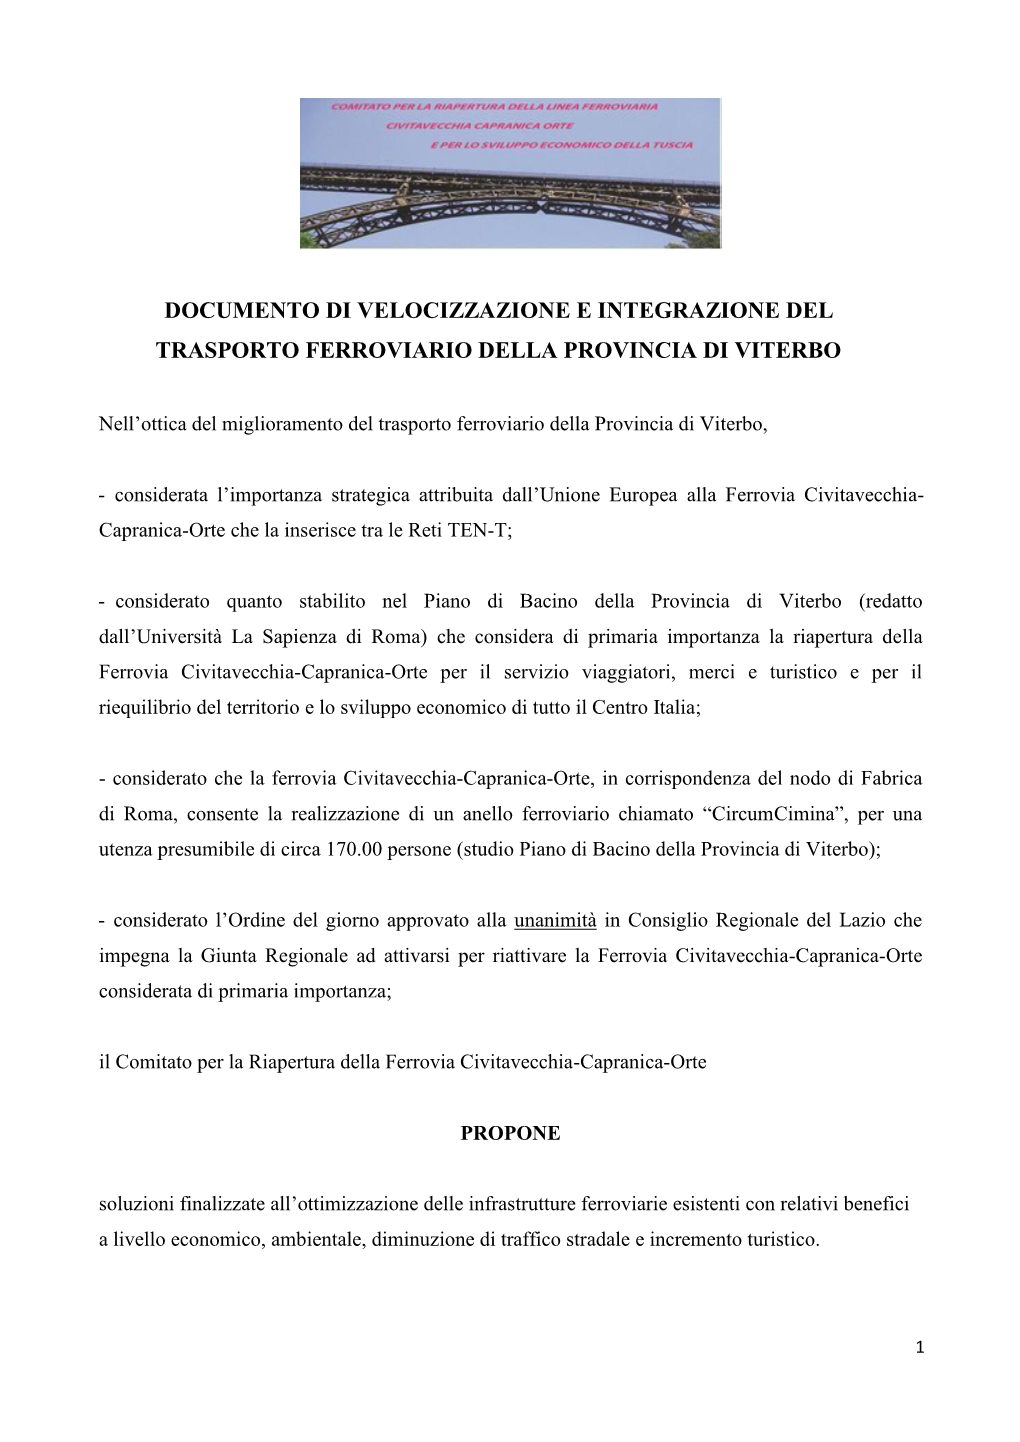 Documento Di Velocizzazione E Integrazione Del Trasporto Ferroviario Della Provincia Di Viterbo